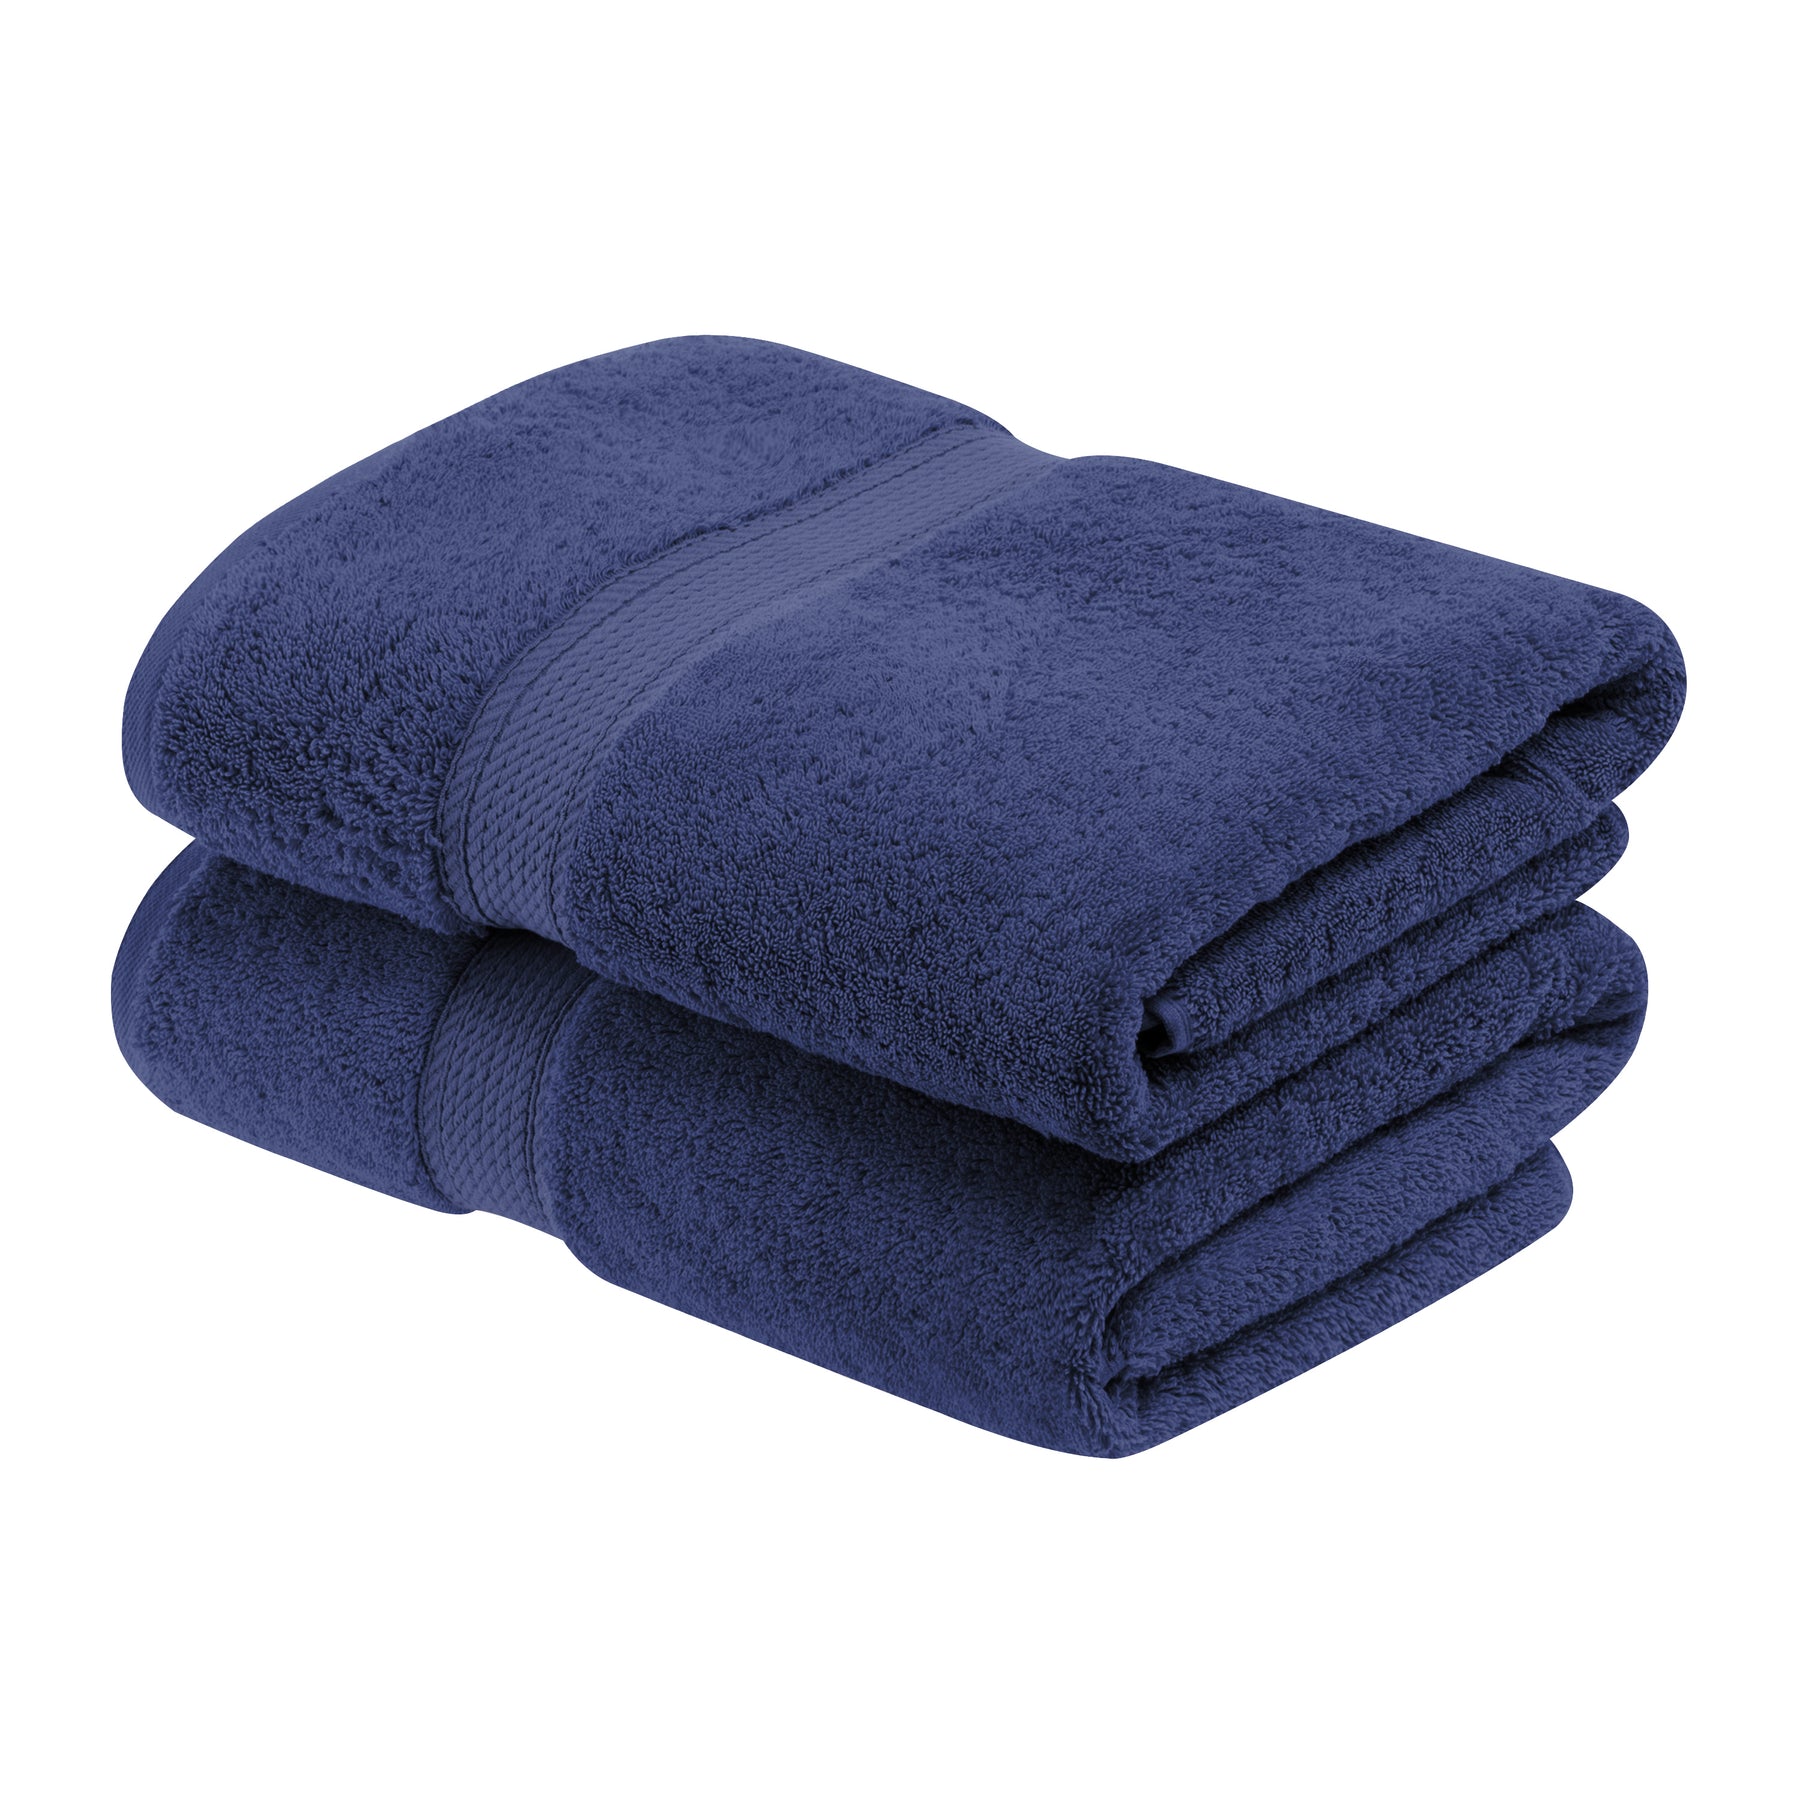 100% Cotton 4-Piece Bath Towel Set, Royal Purple